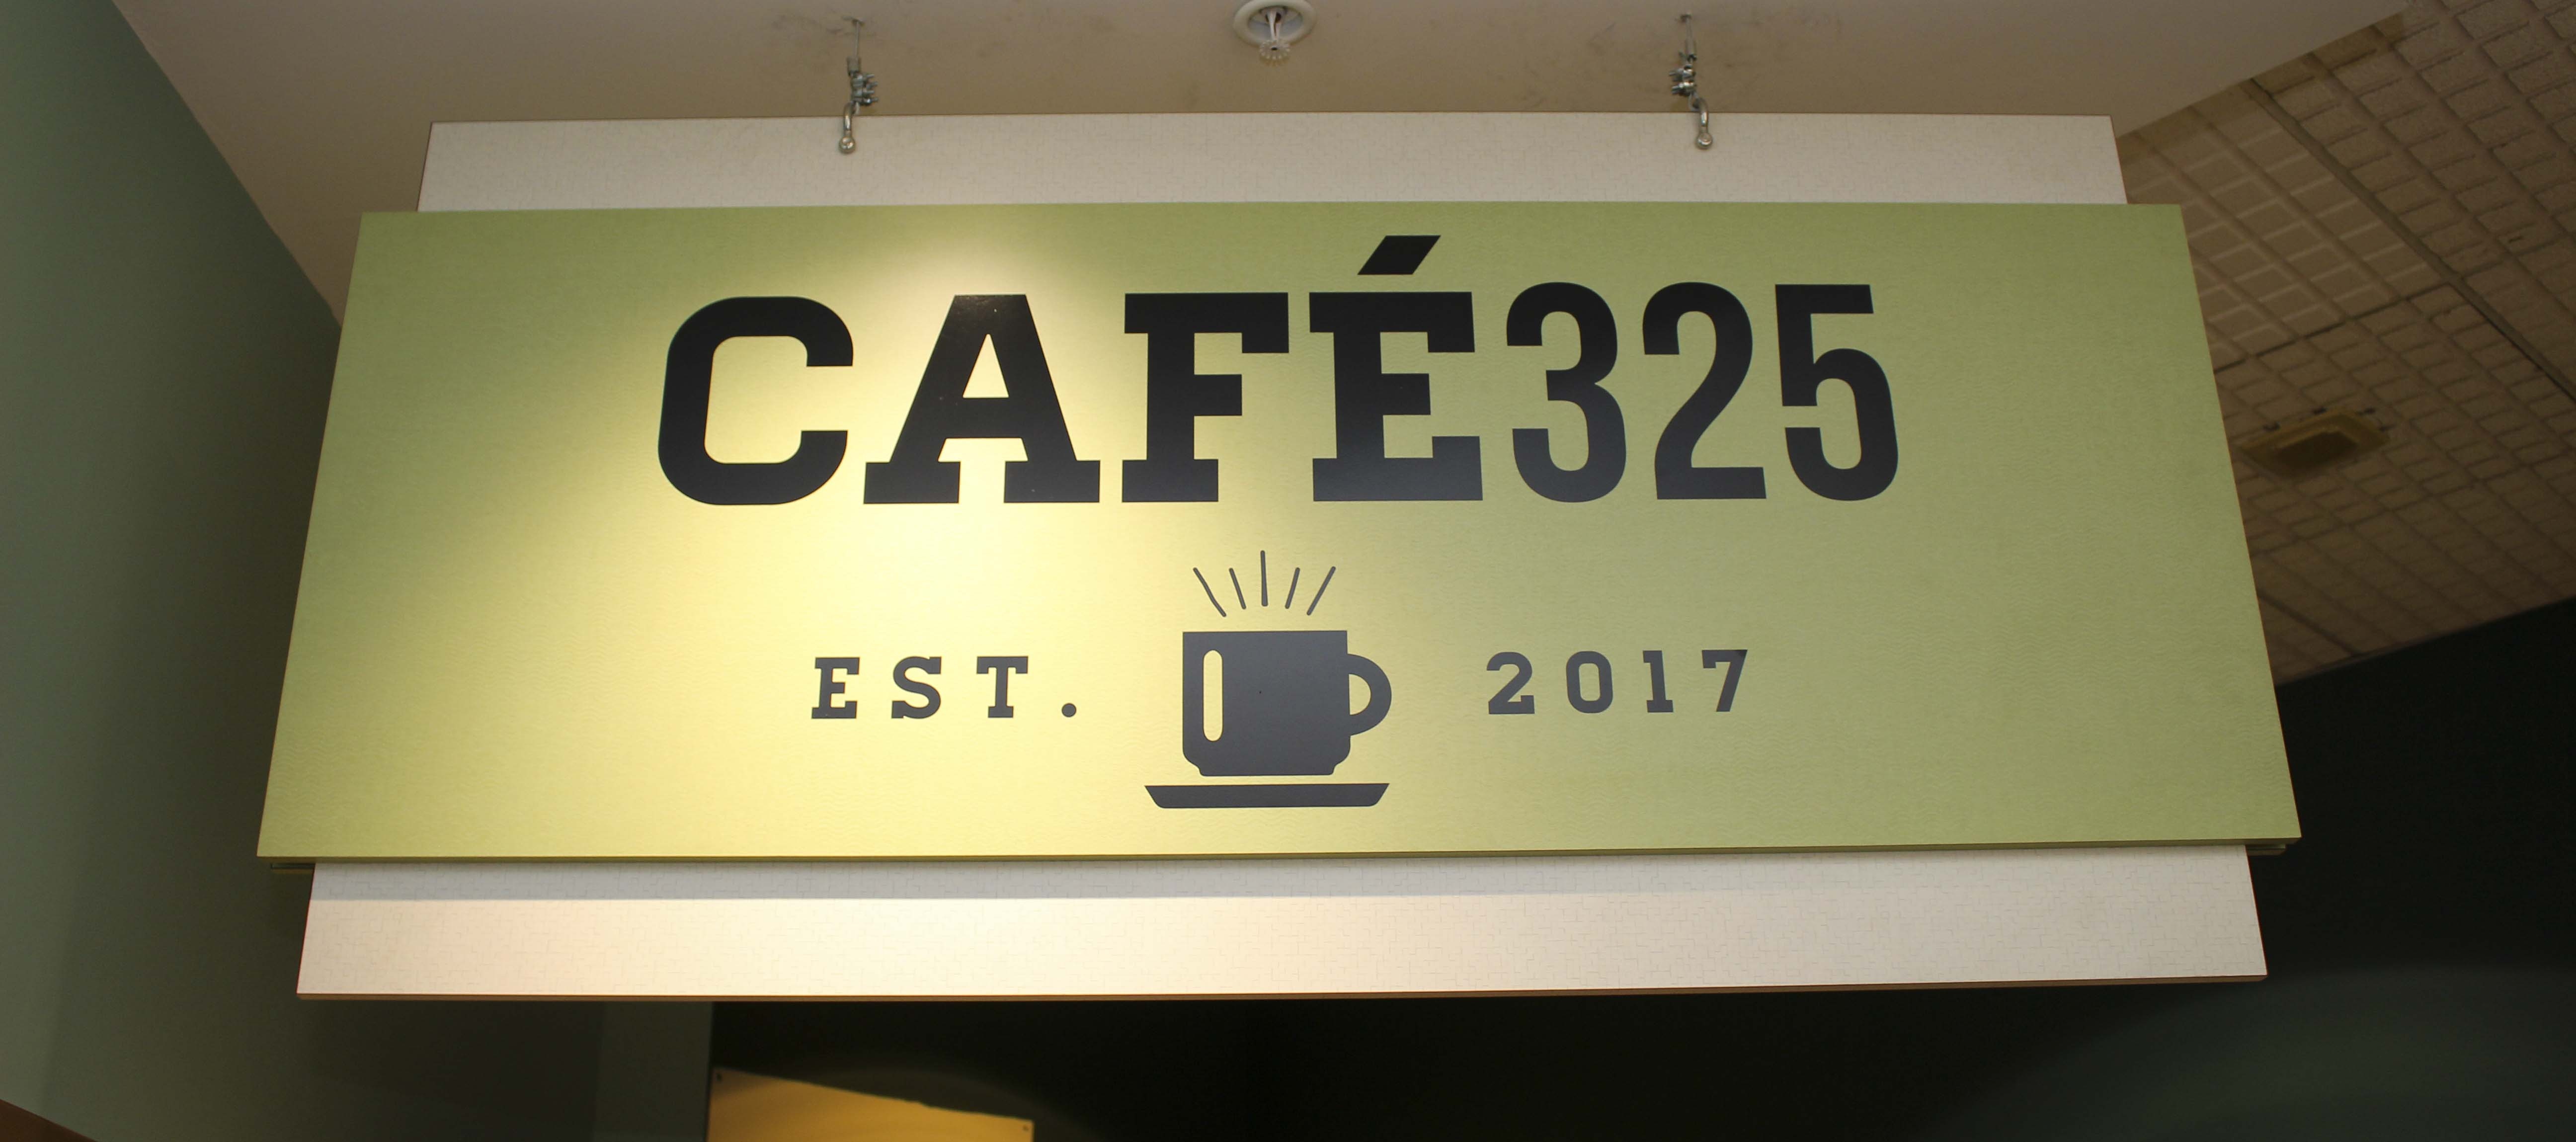 Cafe 325 sign